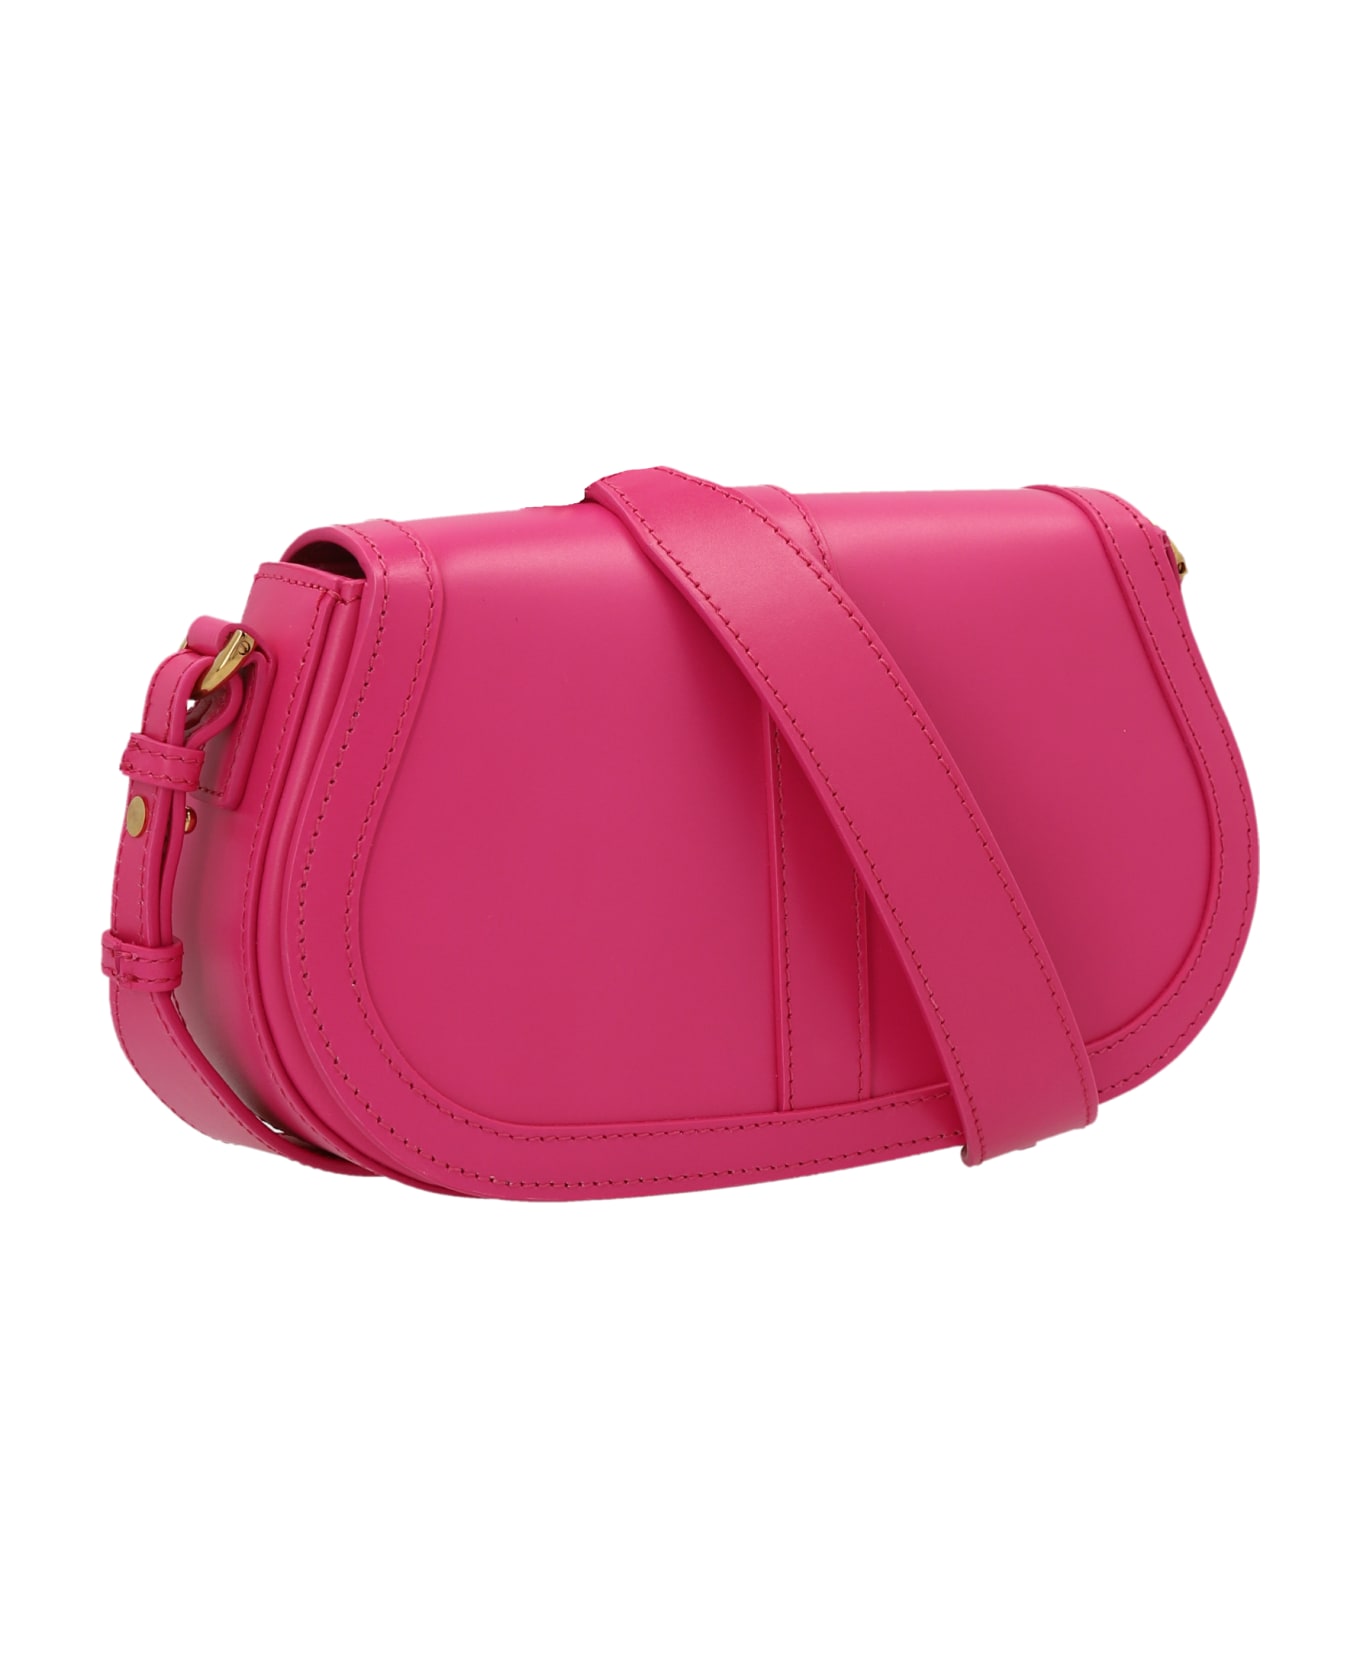 Versace Greca Goddess Shoulder Bag - Pink